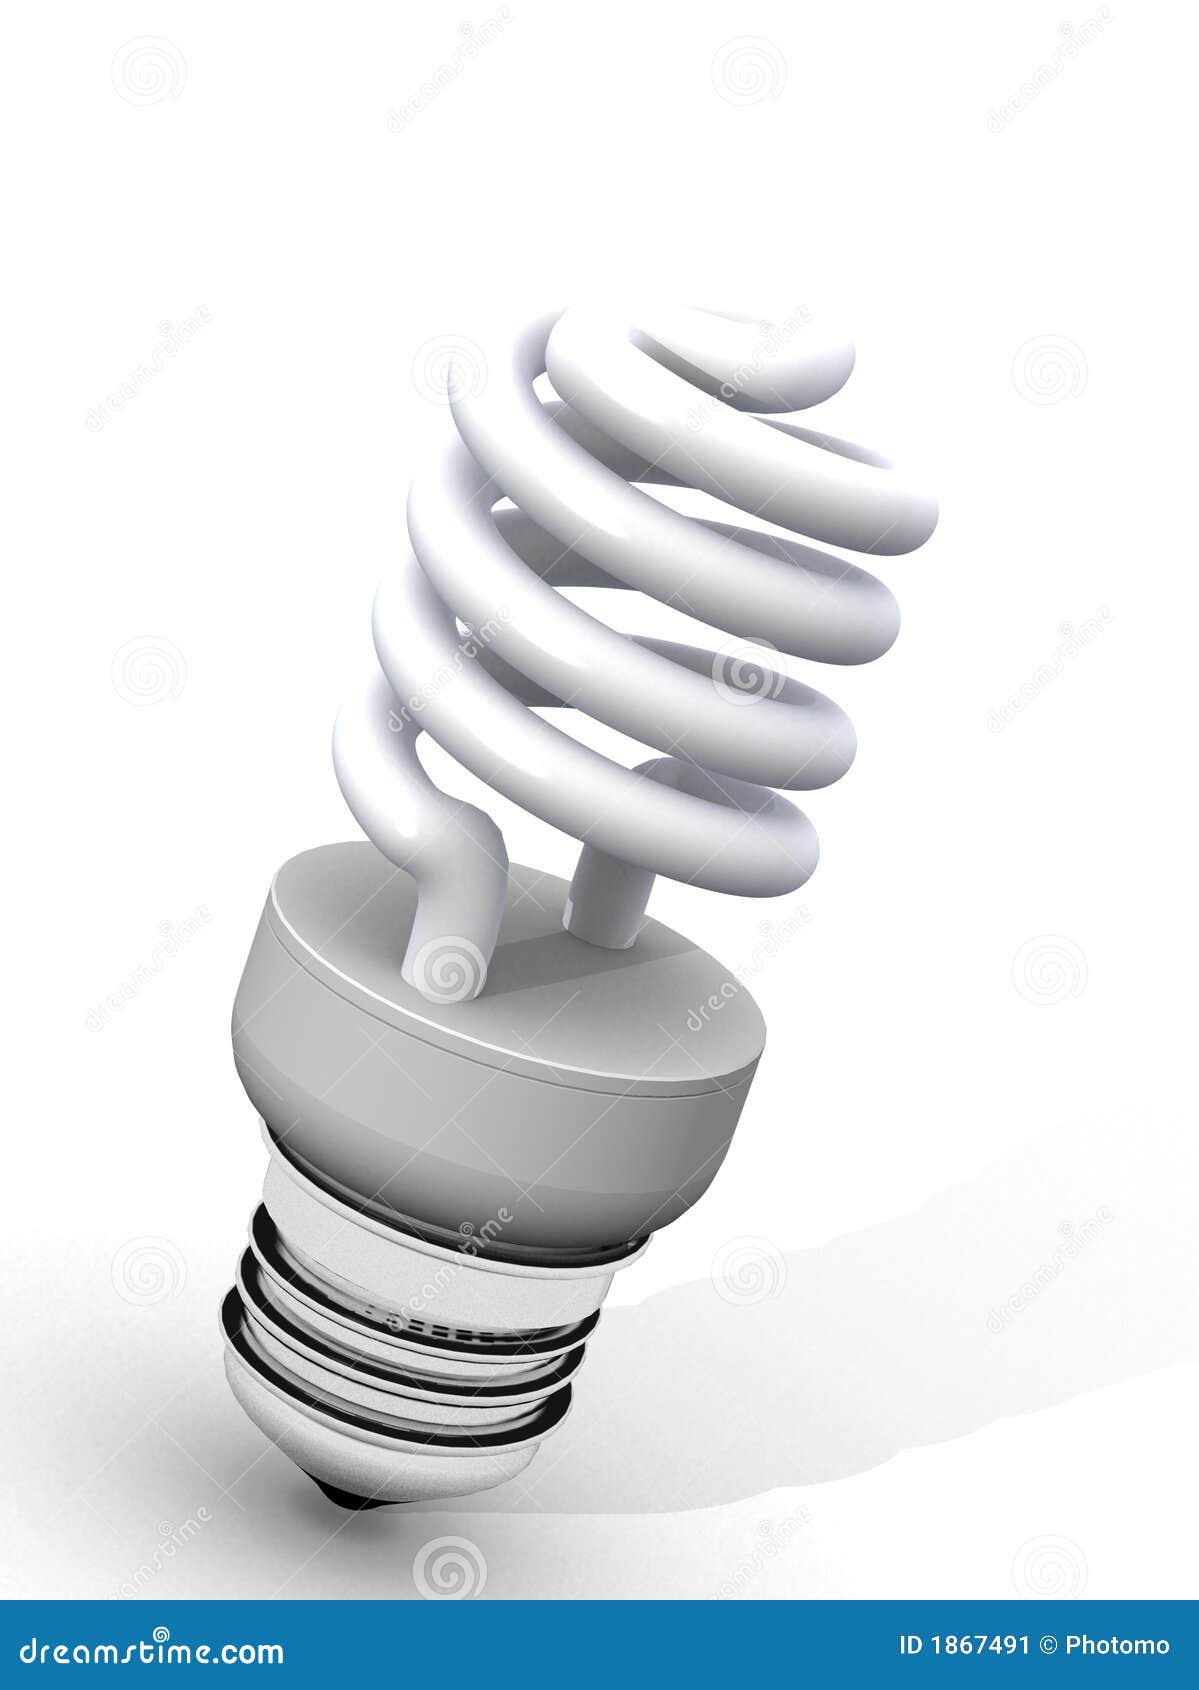 white energy saver light bulb